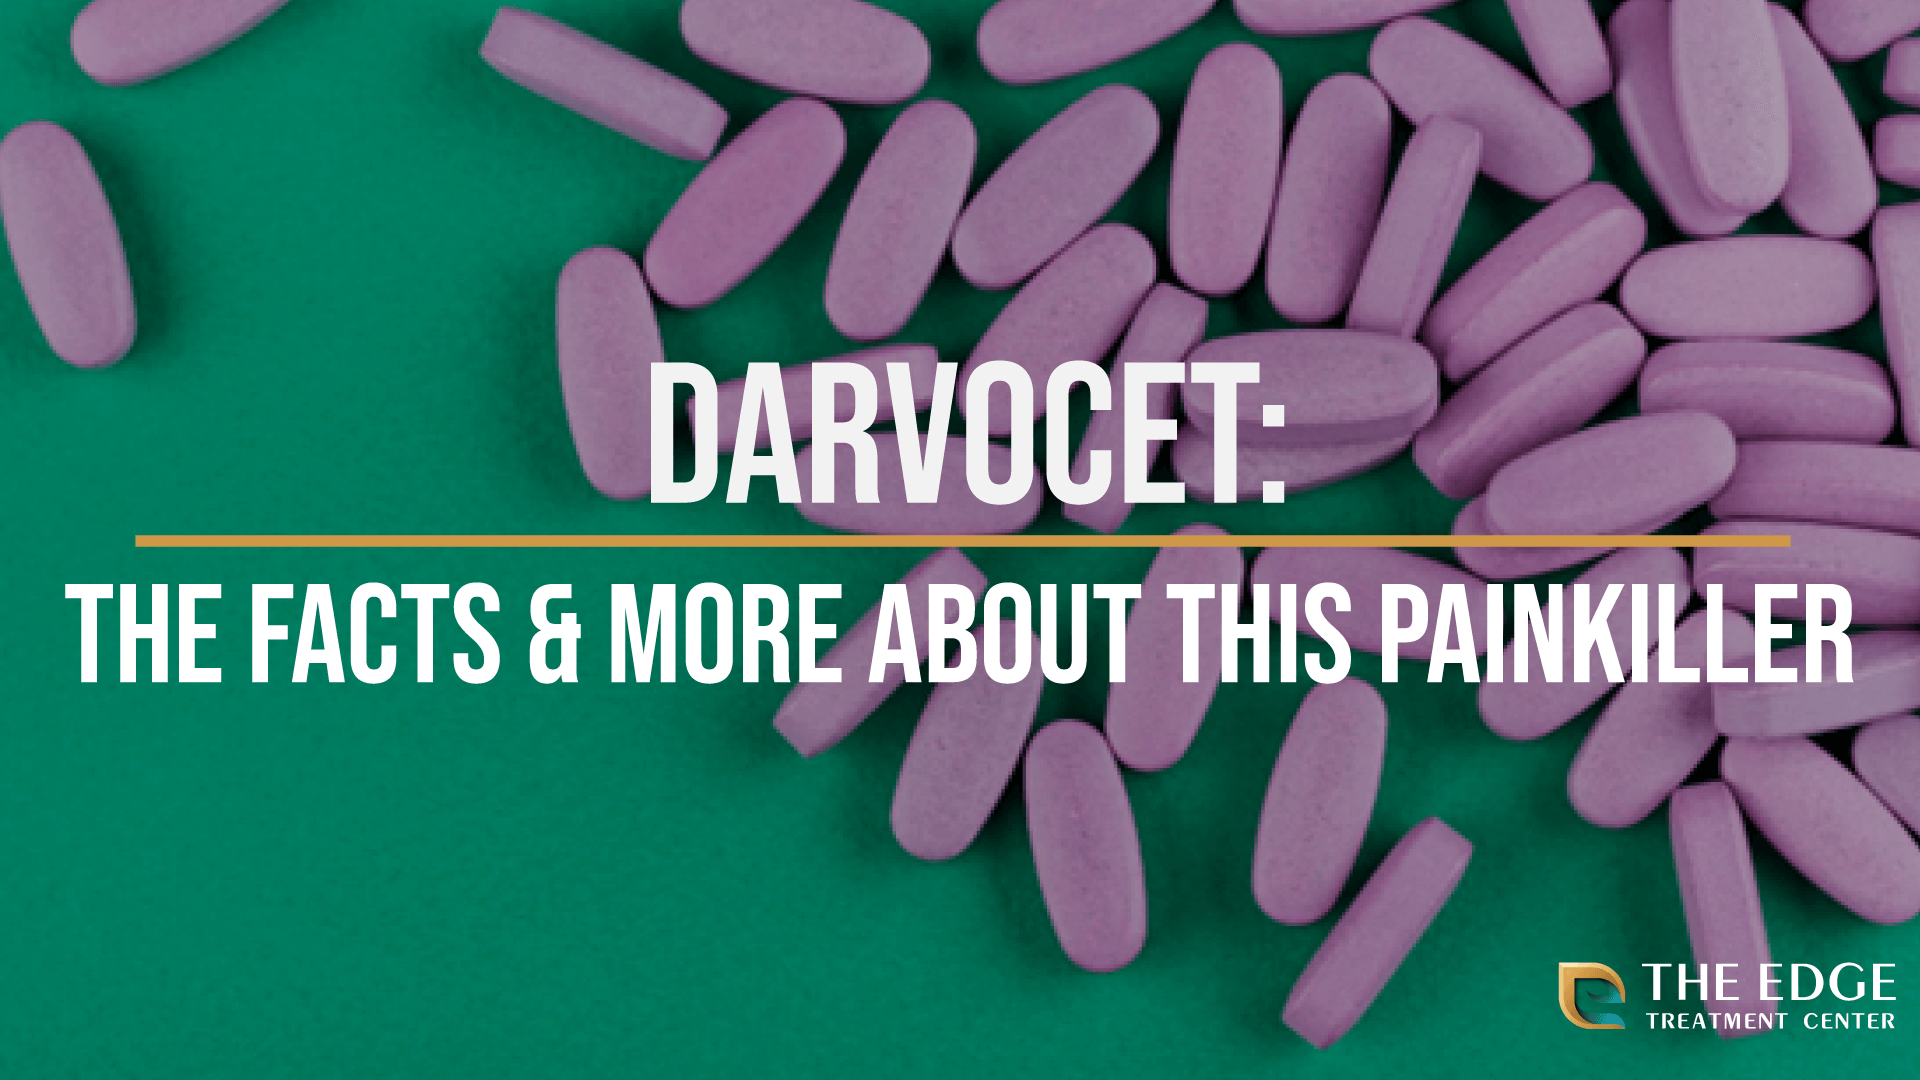 What was Darvocet?